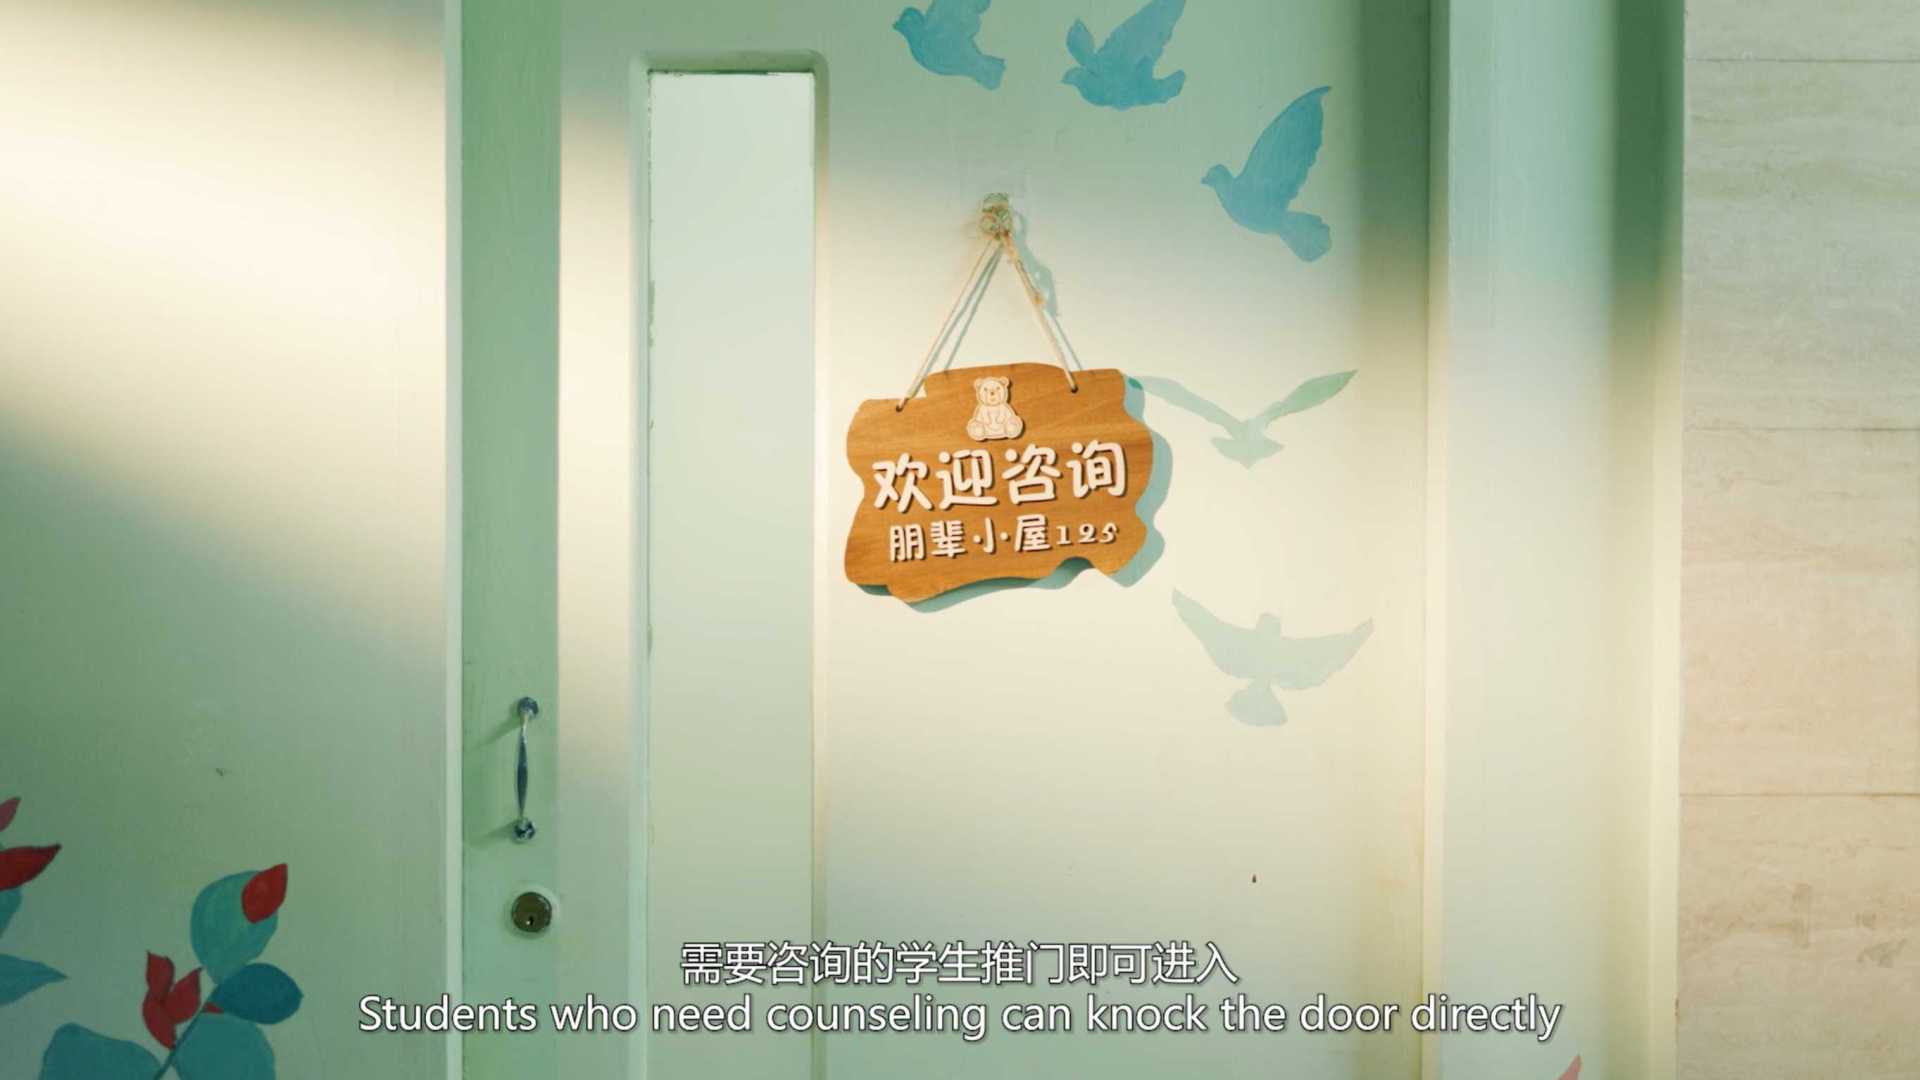 中国人民大学朋辈心理中心十周年形象宣传片